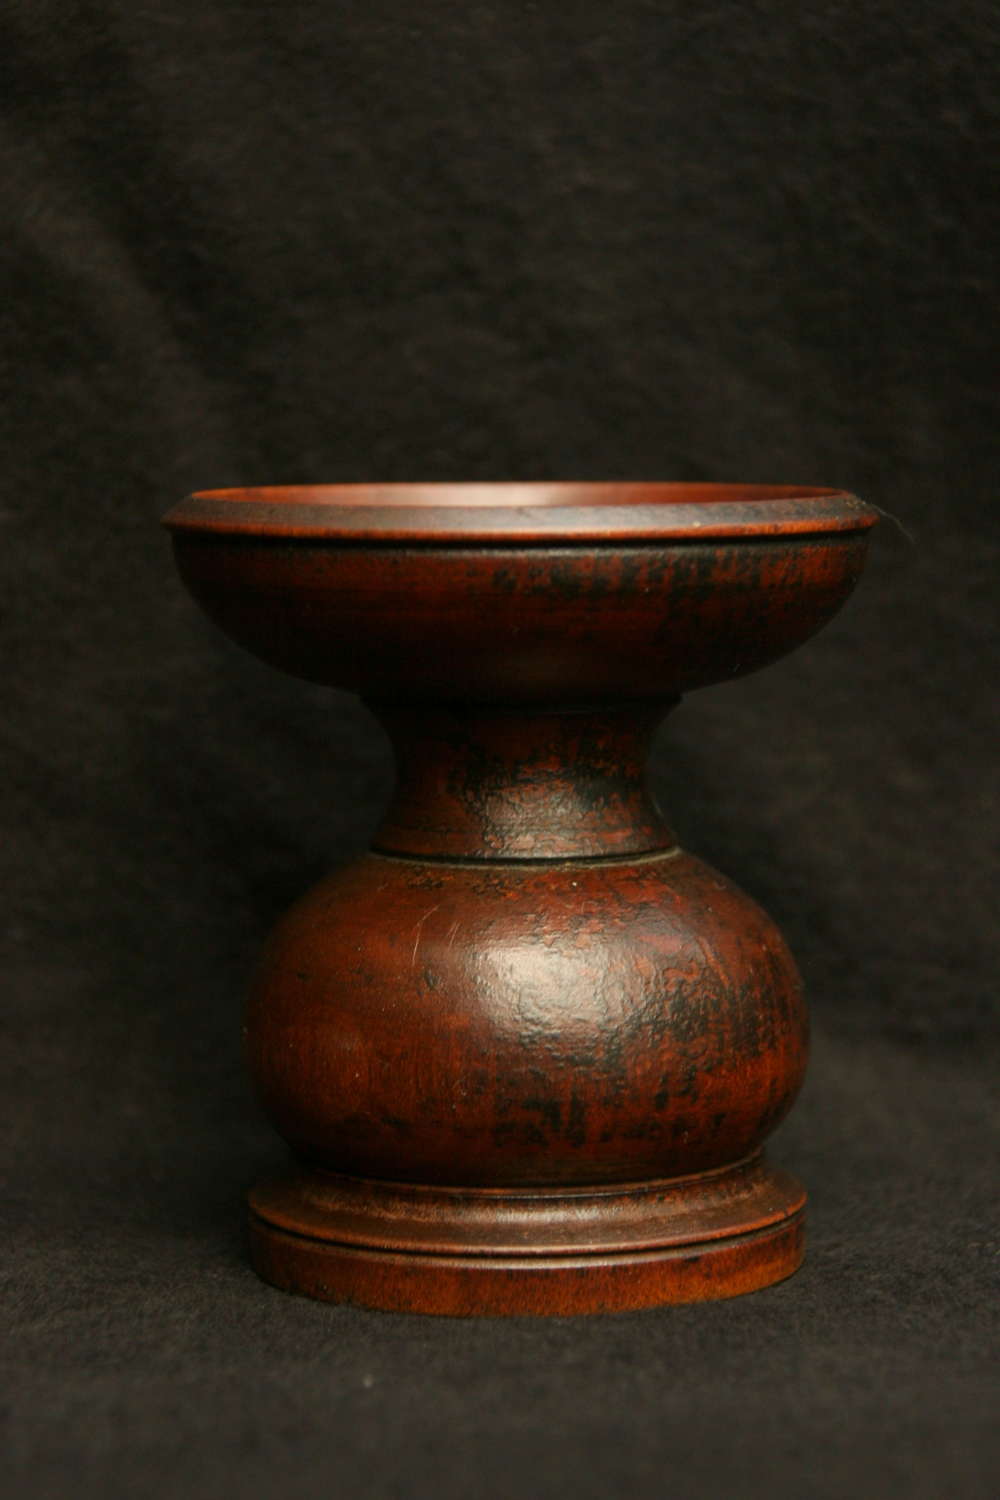 Treen Pounce pot early 19th century